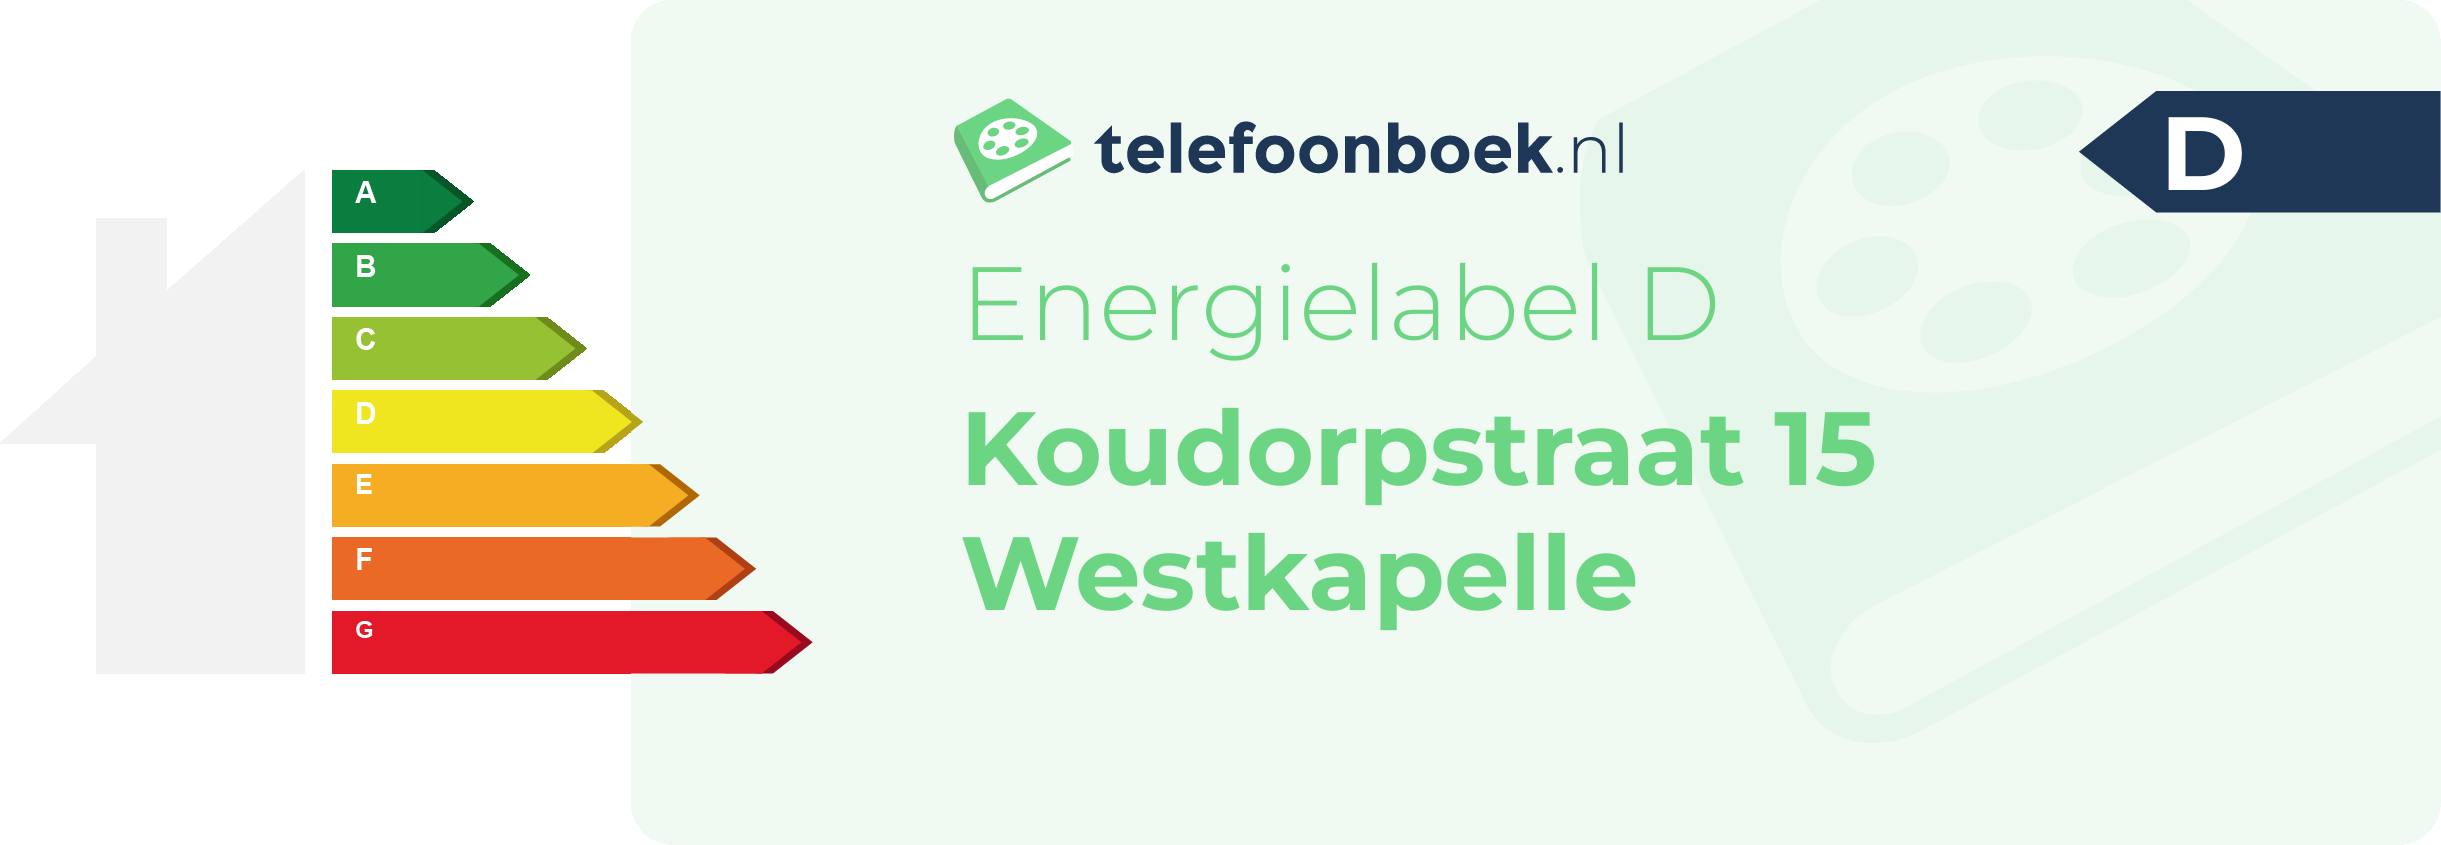 Energielabel Koudorpstraat 15 Westkapelle